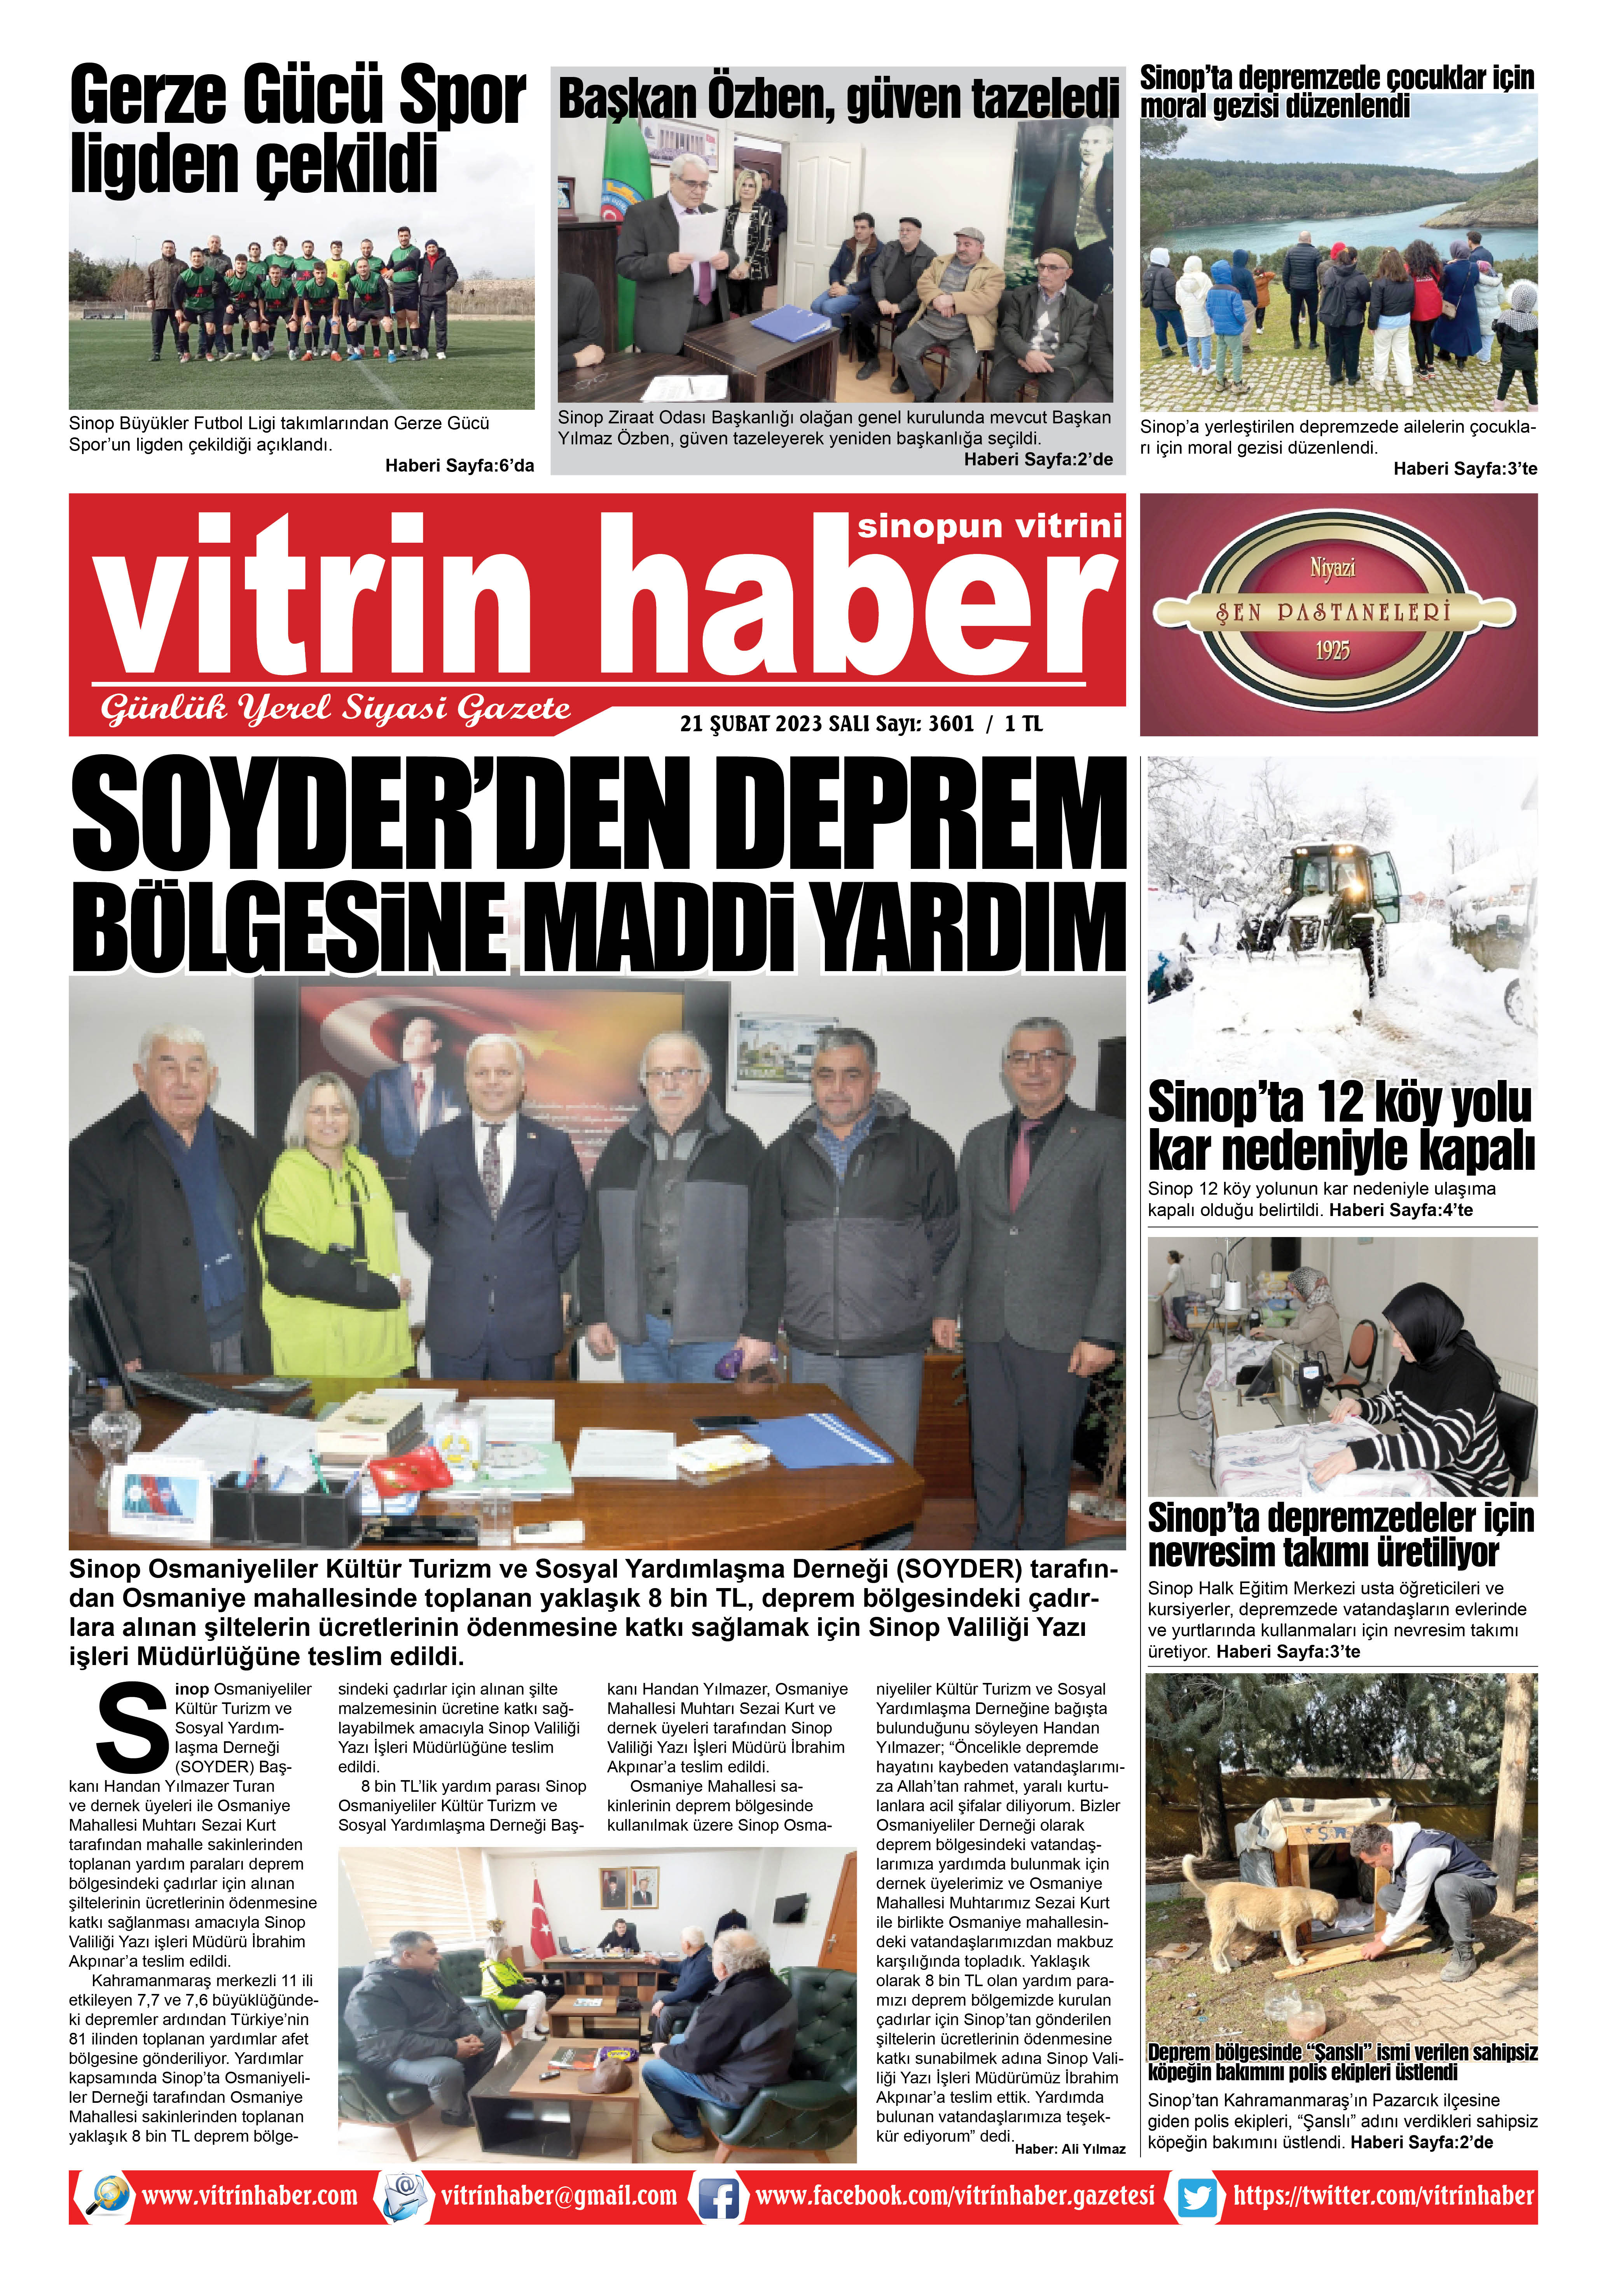 Vitrin Haber - Sinop Haberleri - 21.02.2023 Manşeti